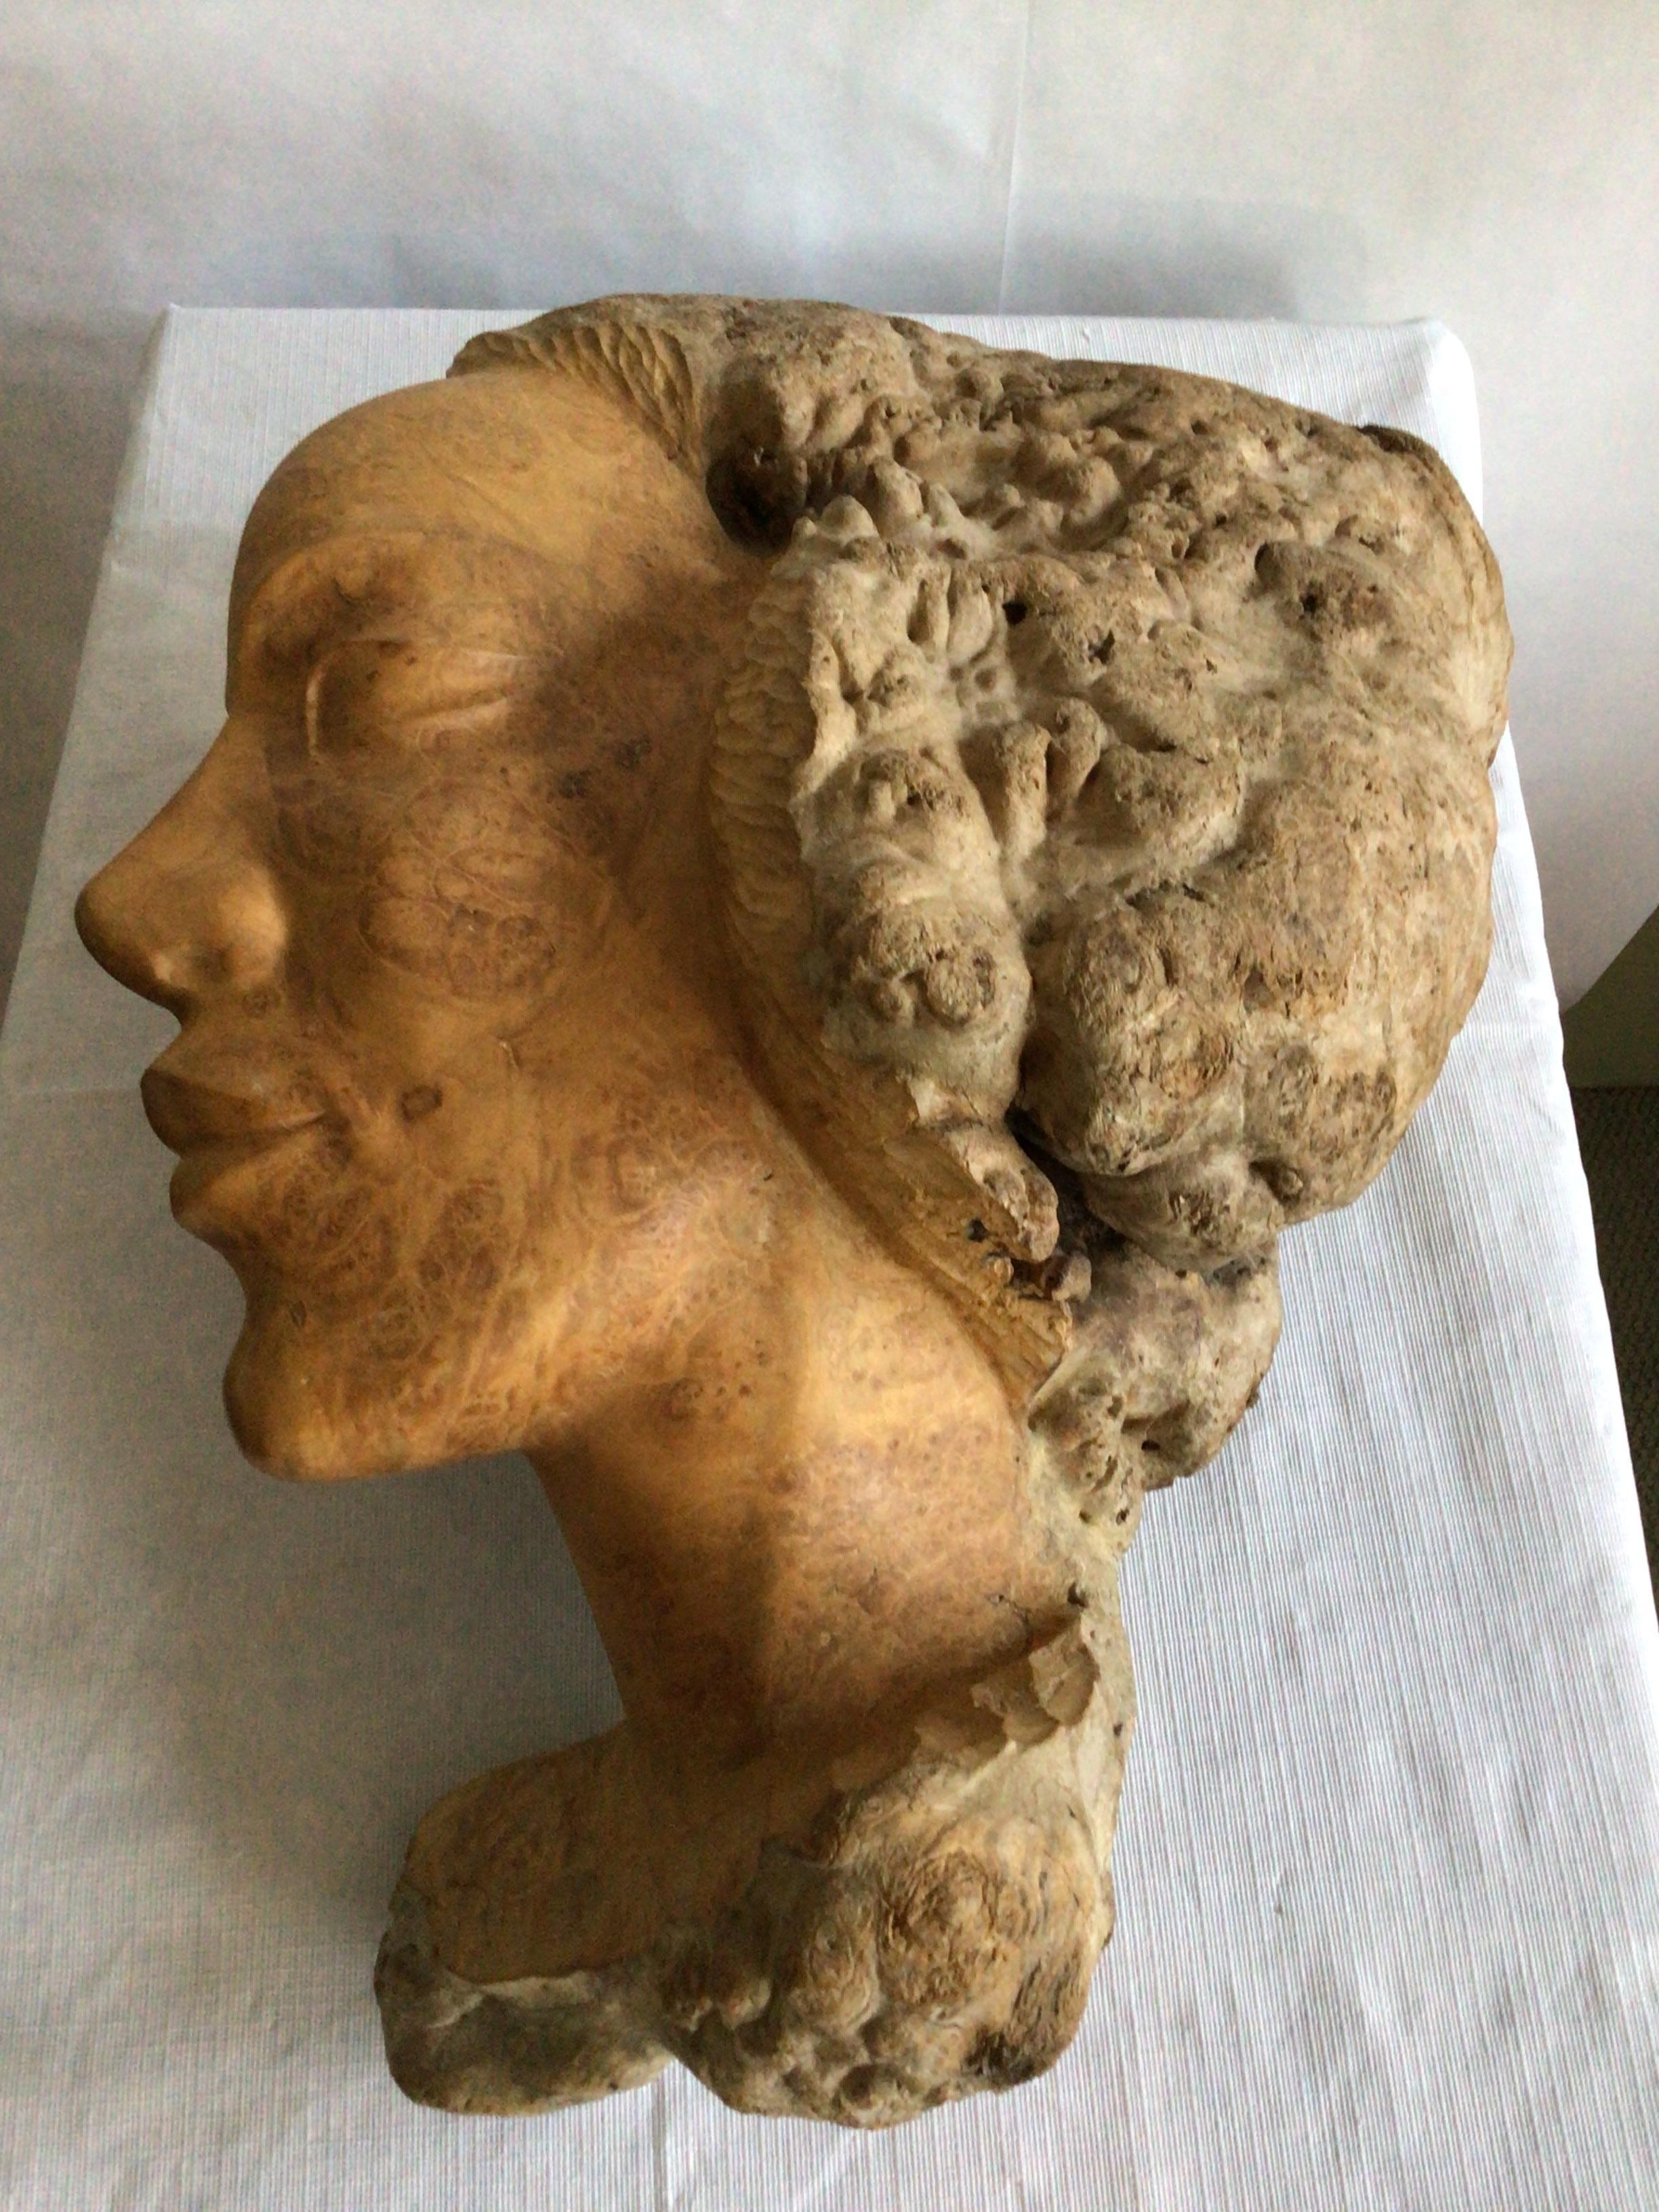 1960er Jahre Burl Wood Schnitzerei von einer Frau Gesicht
Warme, natürliche Wurzelholztöne verleihen dieser handgeschnitzten Skulptur Textur und Interesse
Natürlich und doch raffiniert 
Kleiner Chip in der Maserung wie im Bild gezeigt